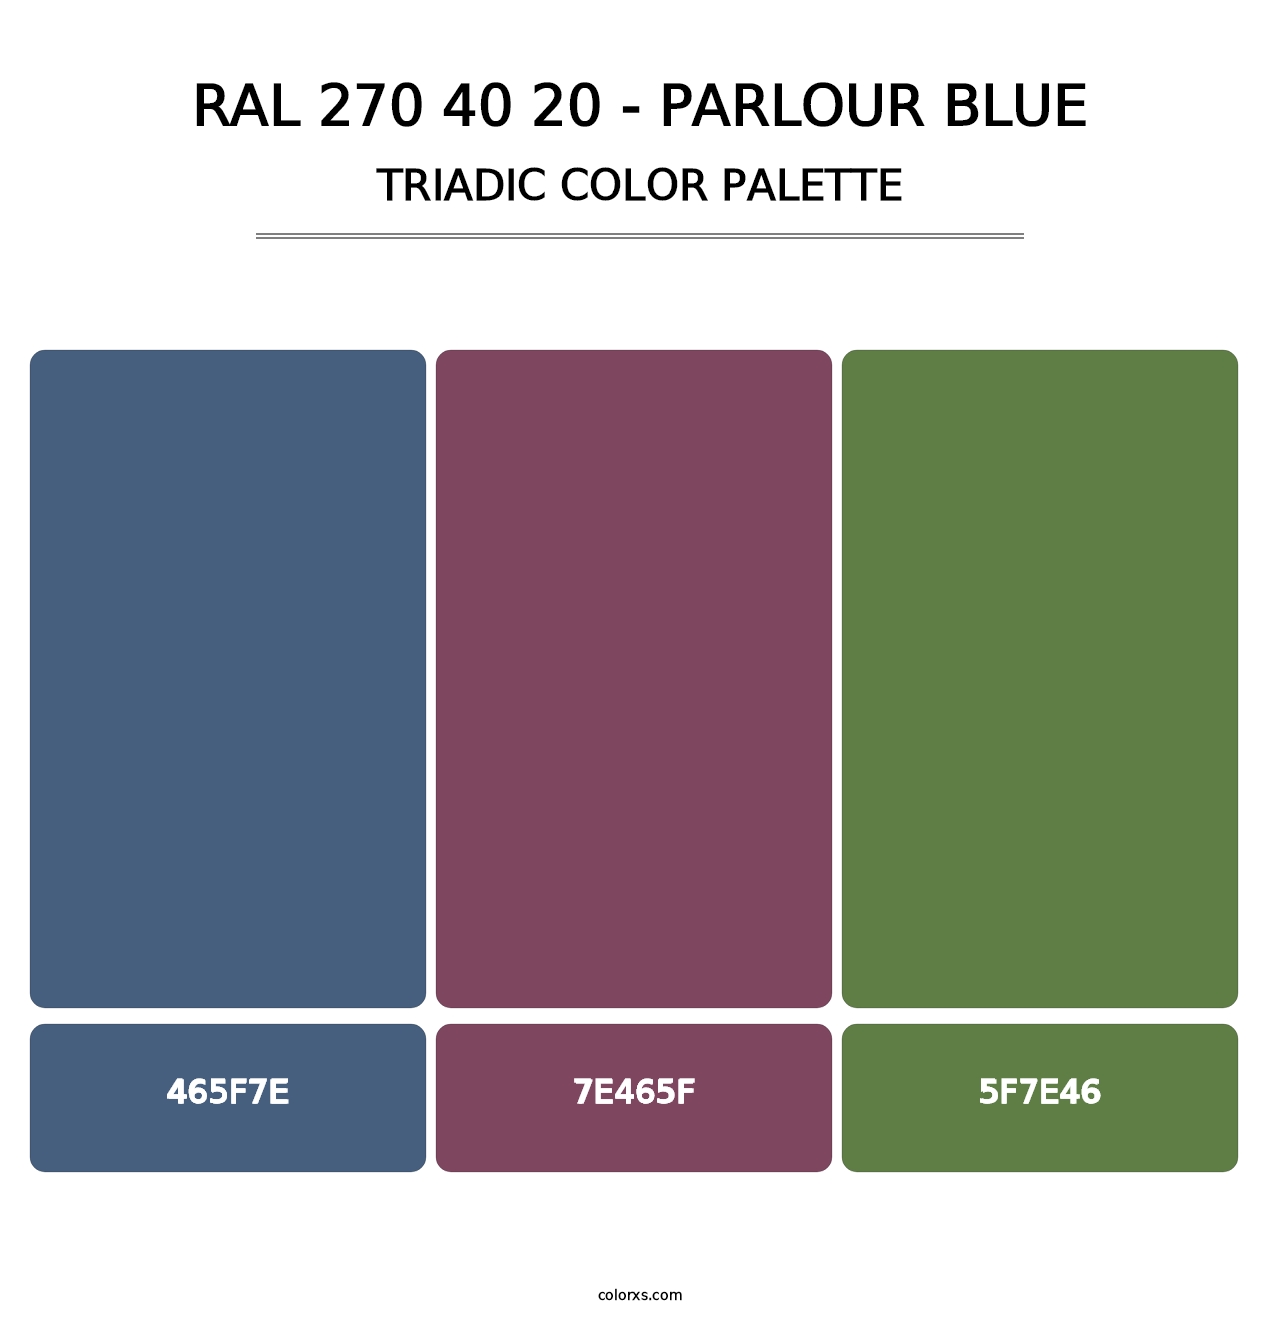 RAL 270 40 20 - Parlour Blue - Triadic Color Palette